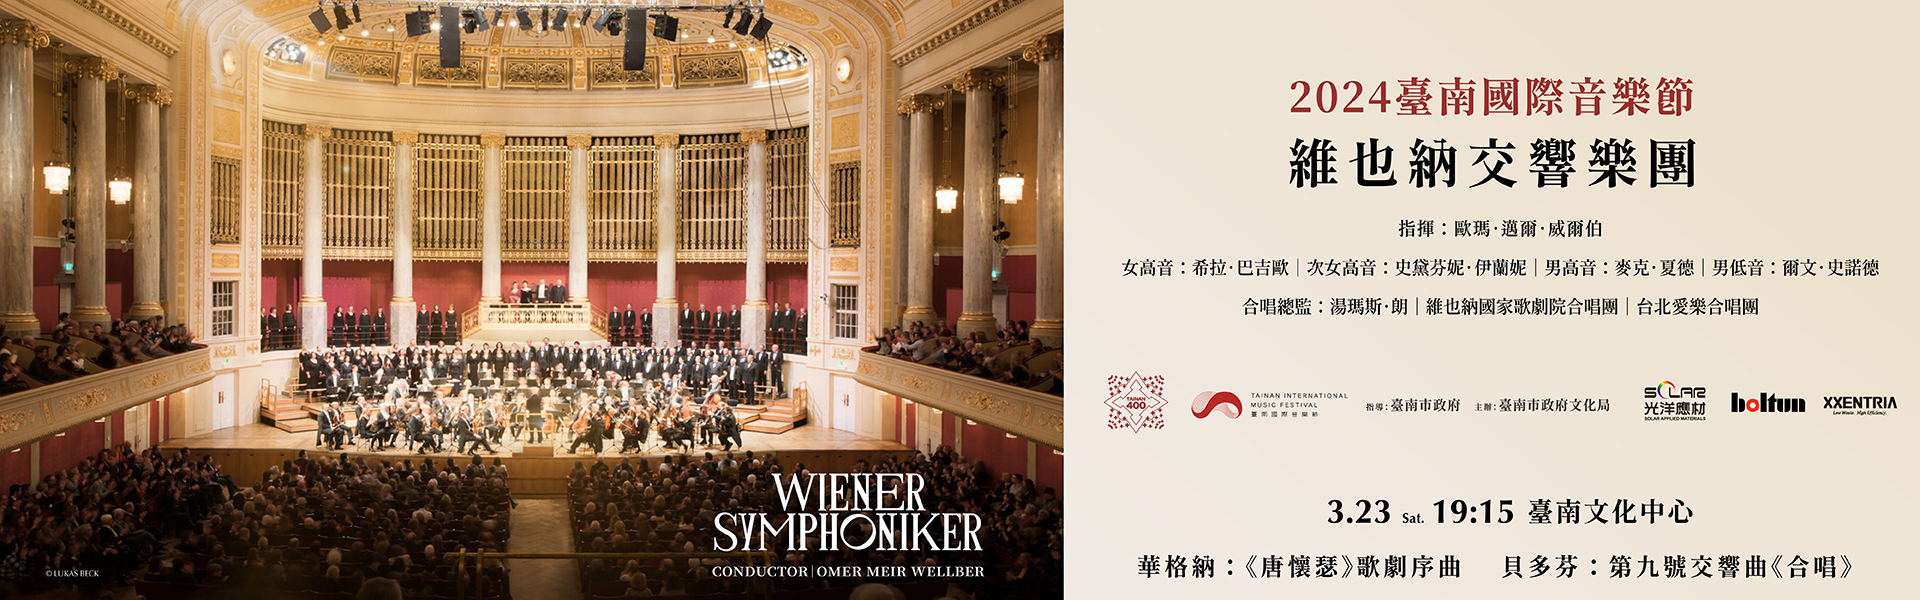 臺南400 x 2024臺南國際音樂節-維也納交響樂團